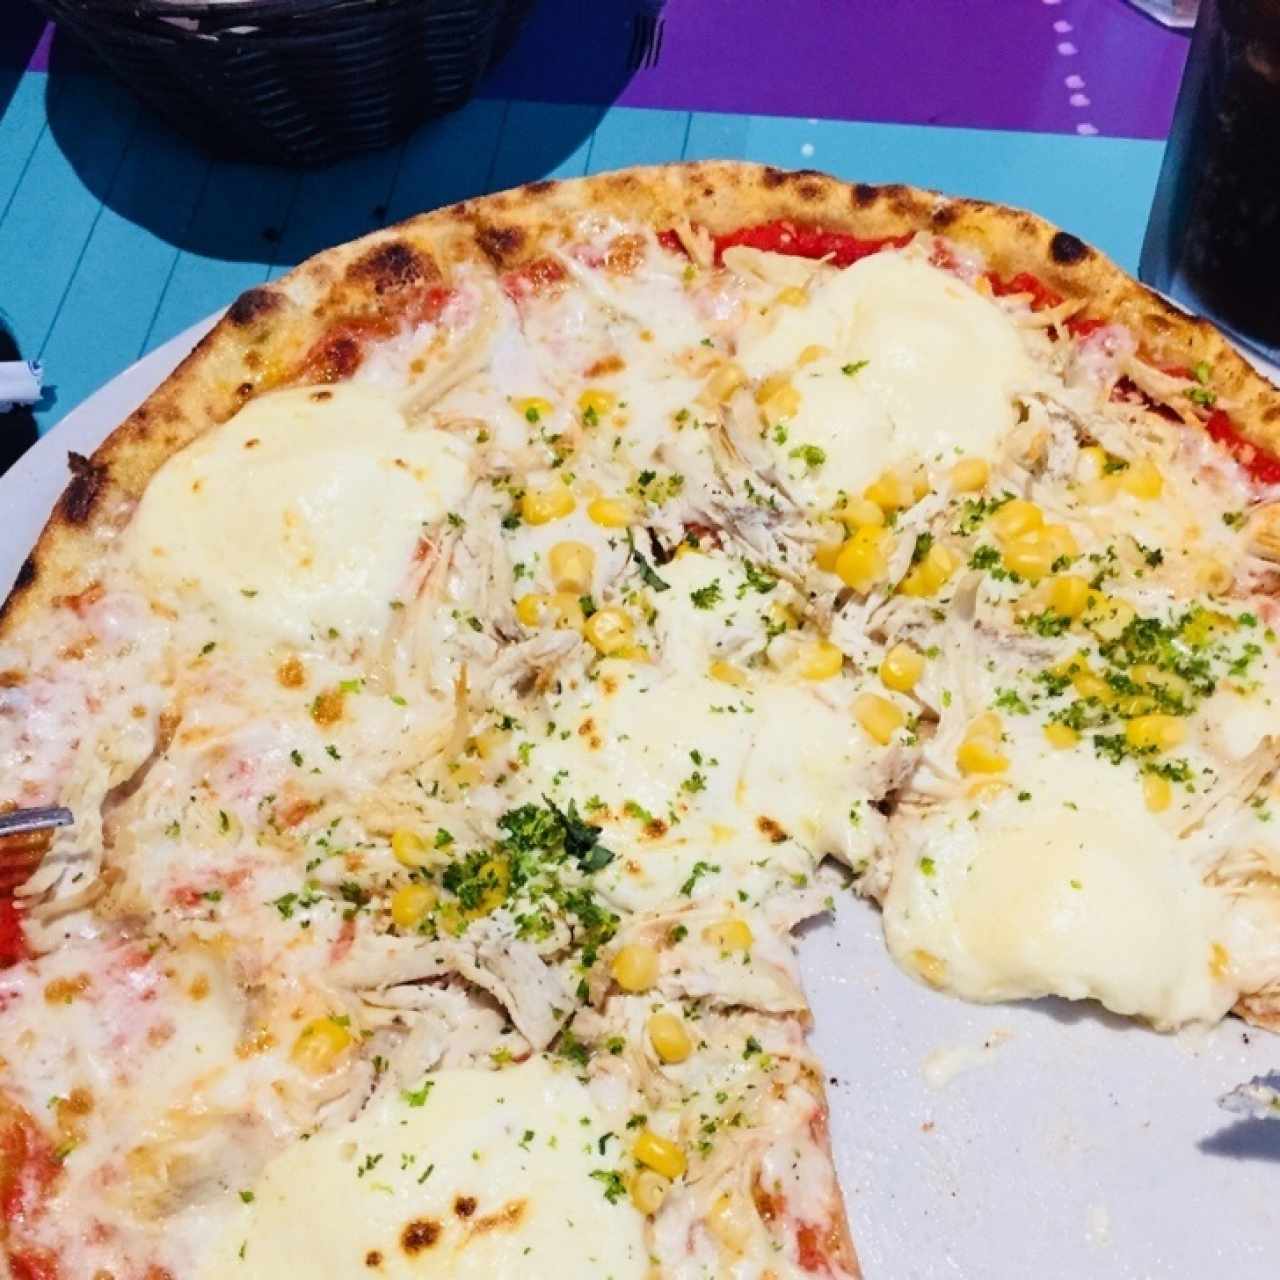 Pizza Rio de Janeiro - Pollo con queso catupiry y orégano, lo del maíz es invento mío